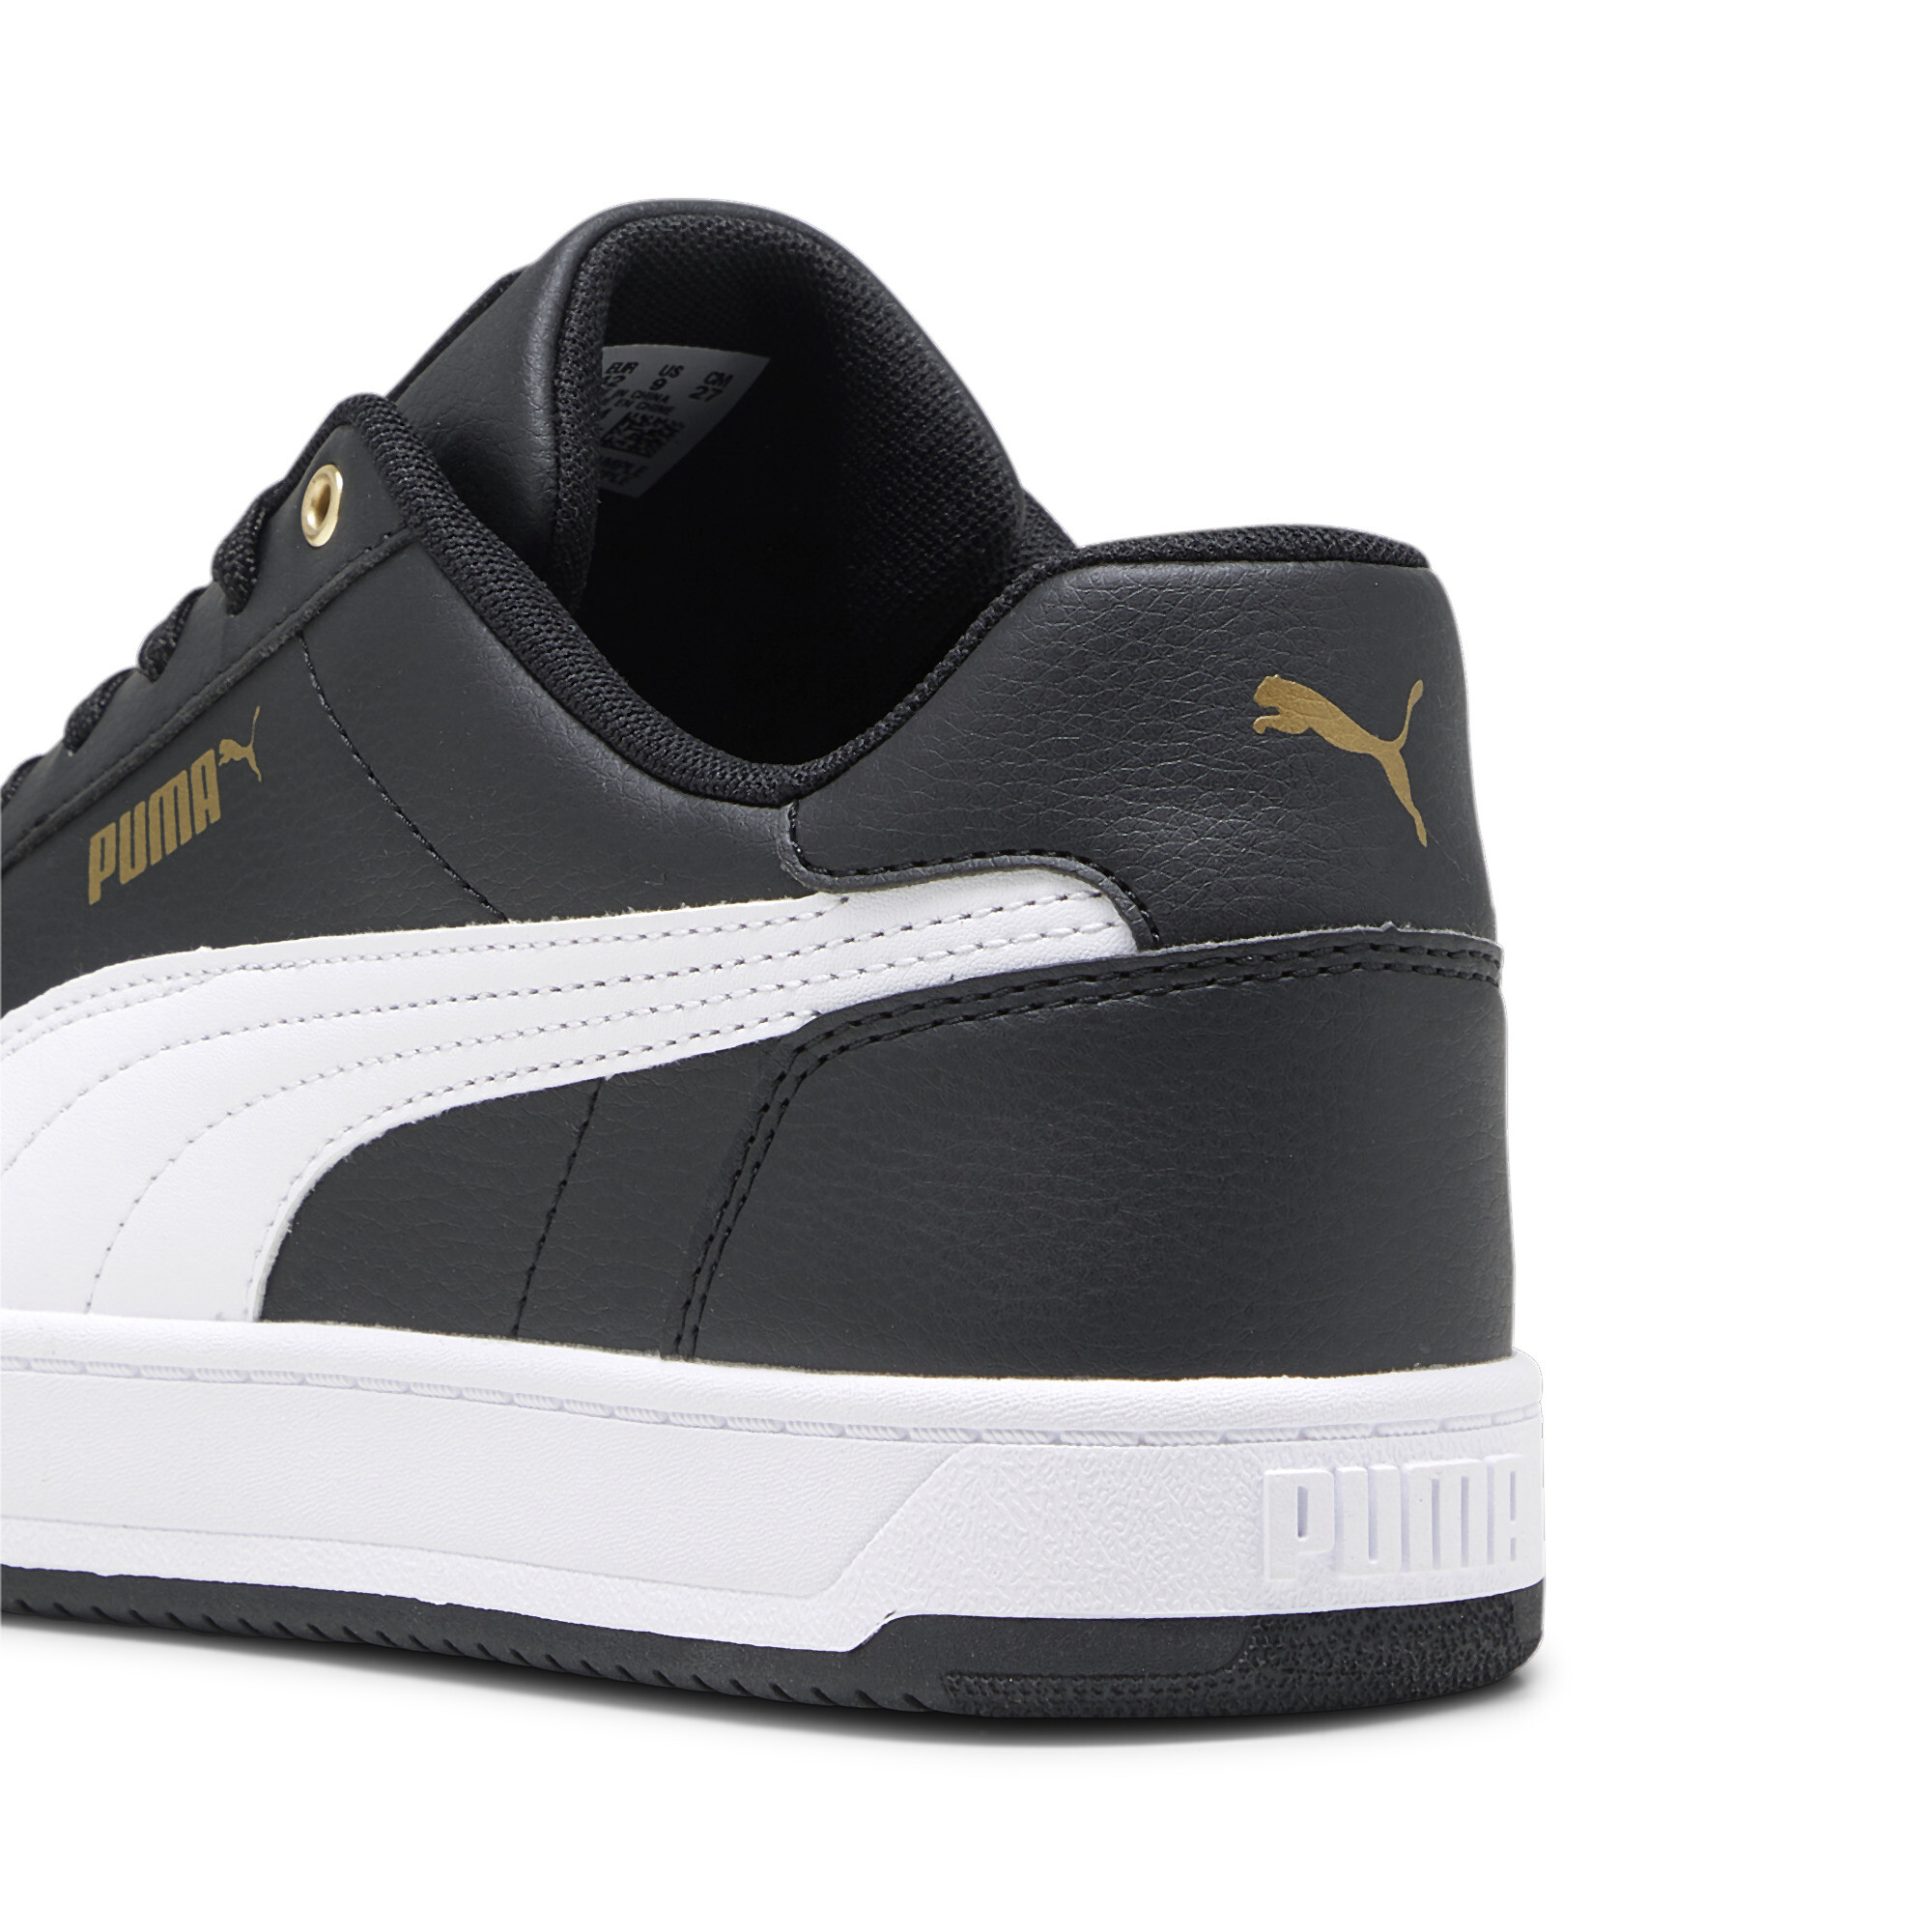 Men's PUMA Caven 2.0 Sneakers In Black/Gold, Size EU 38.5